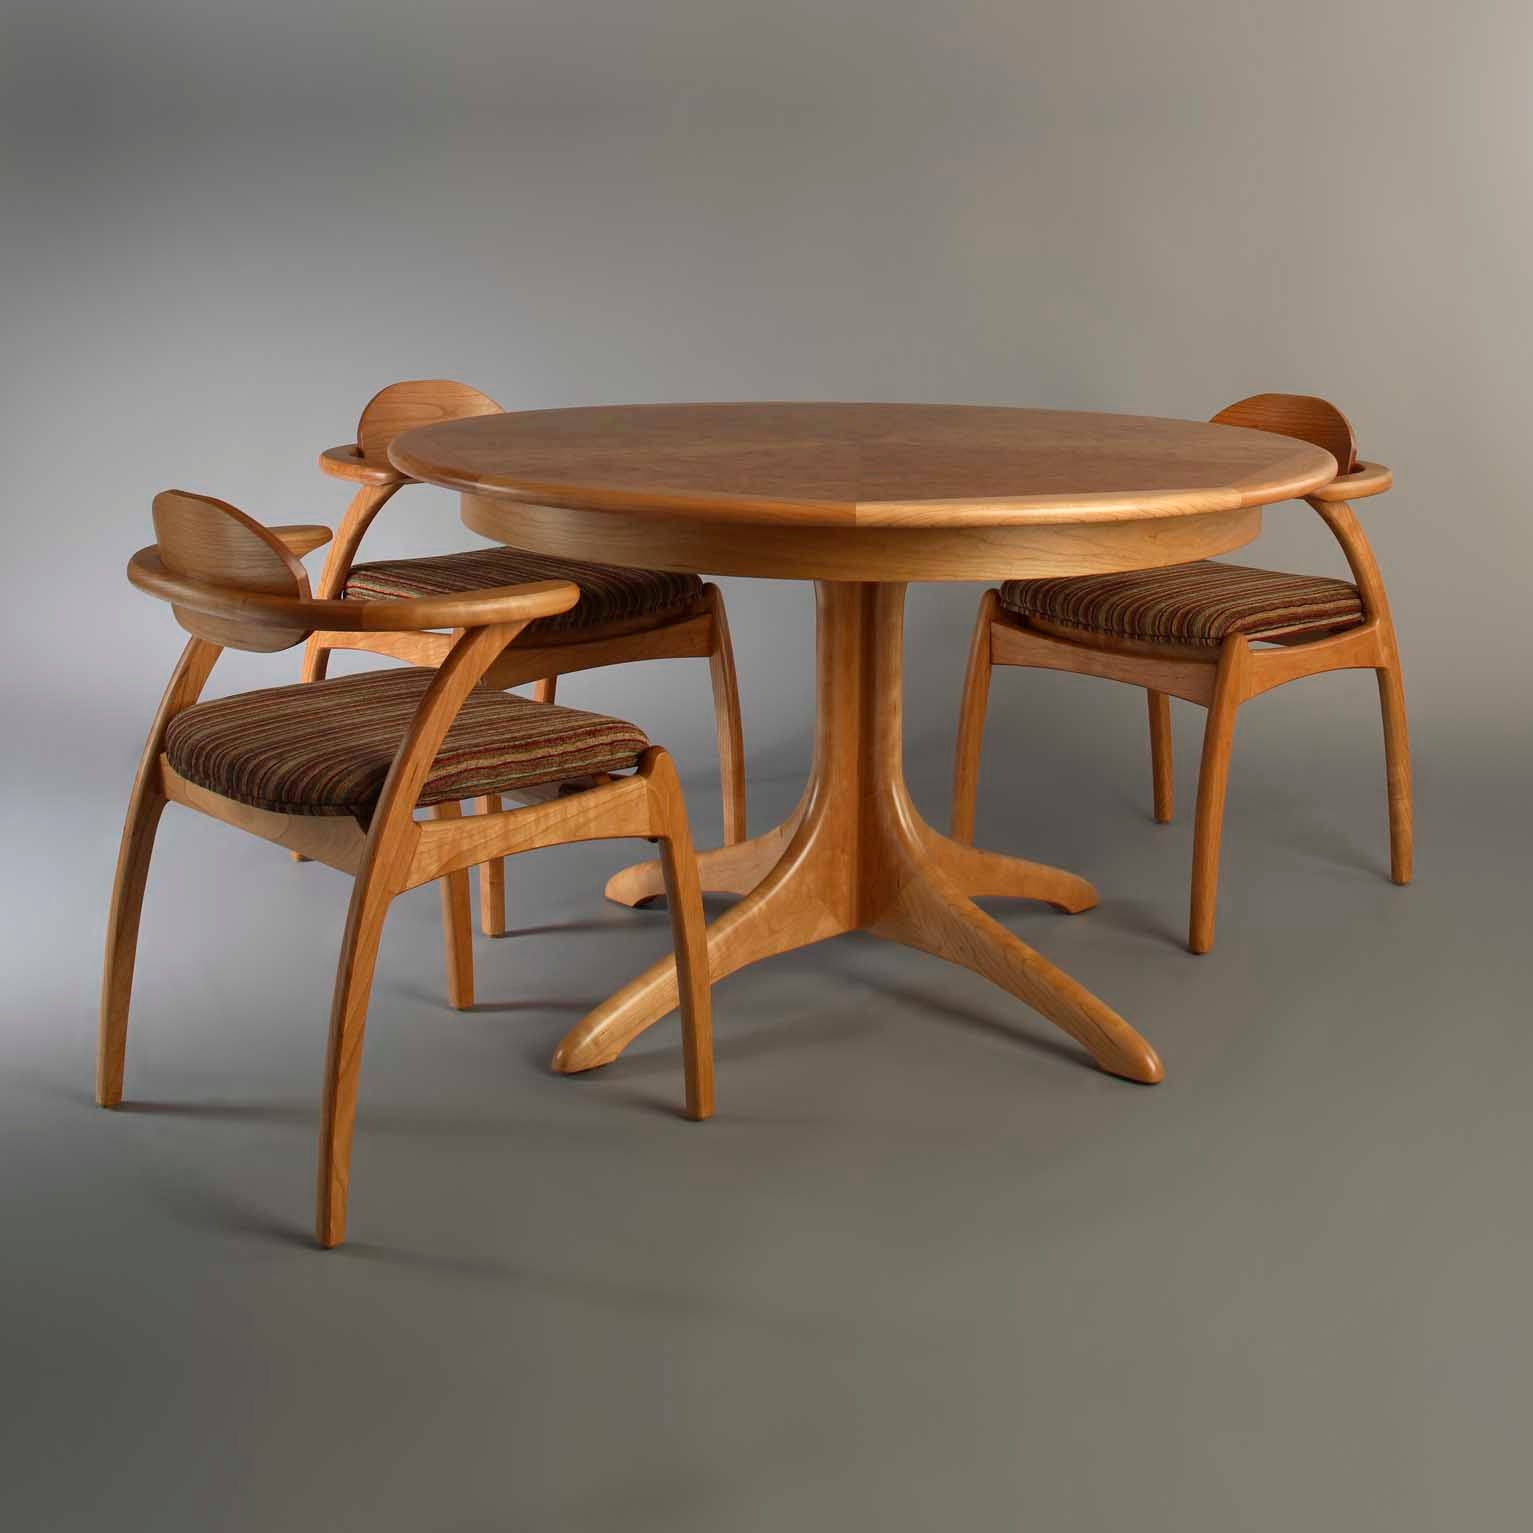 Walden Table | Hardwood Artisans Handcrafted Dining Furniture